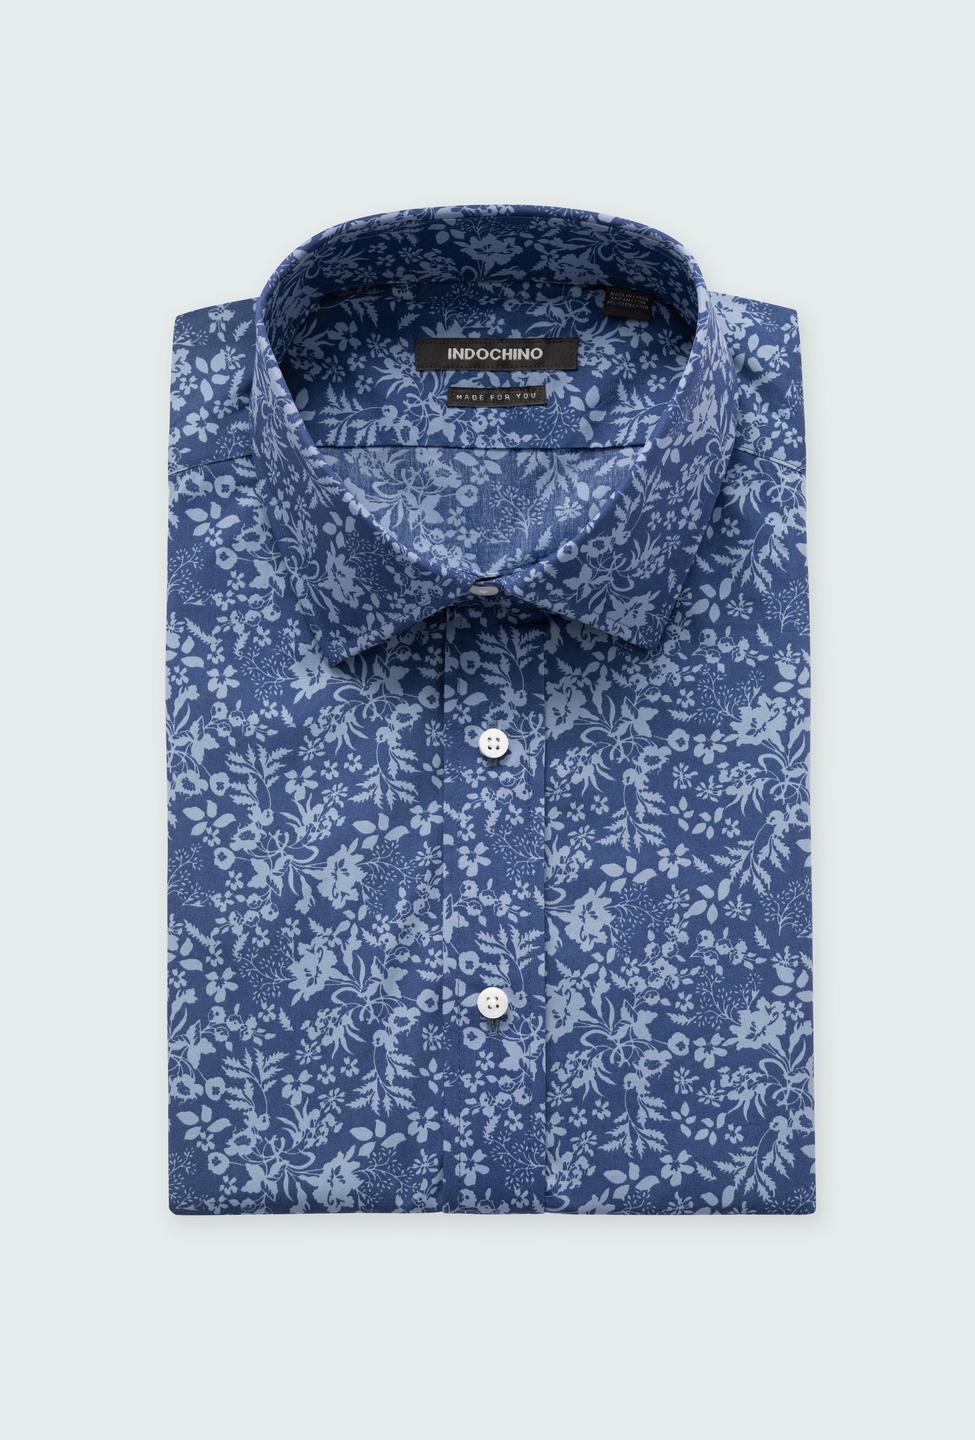 Kettleby Floral Blue Shirt